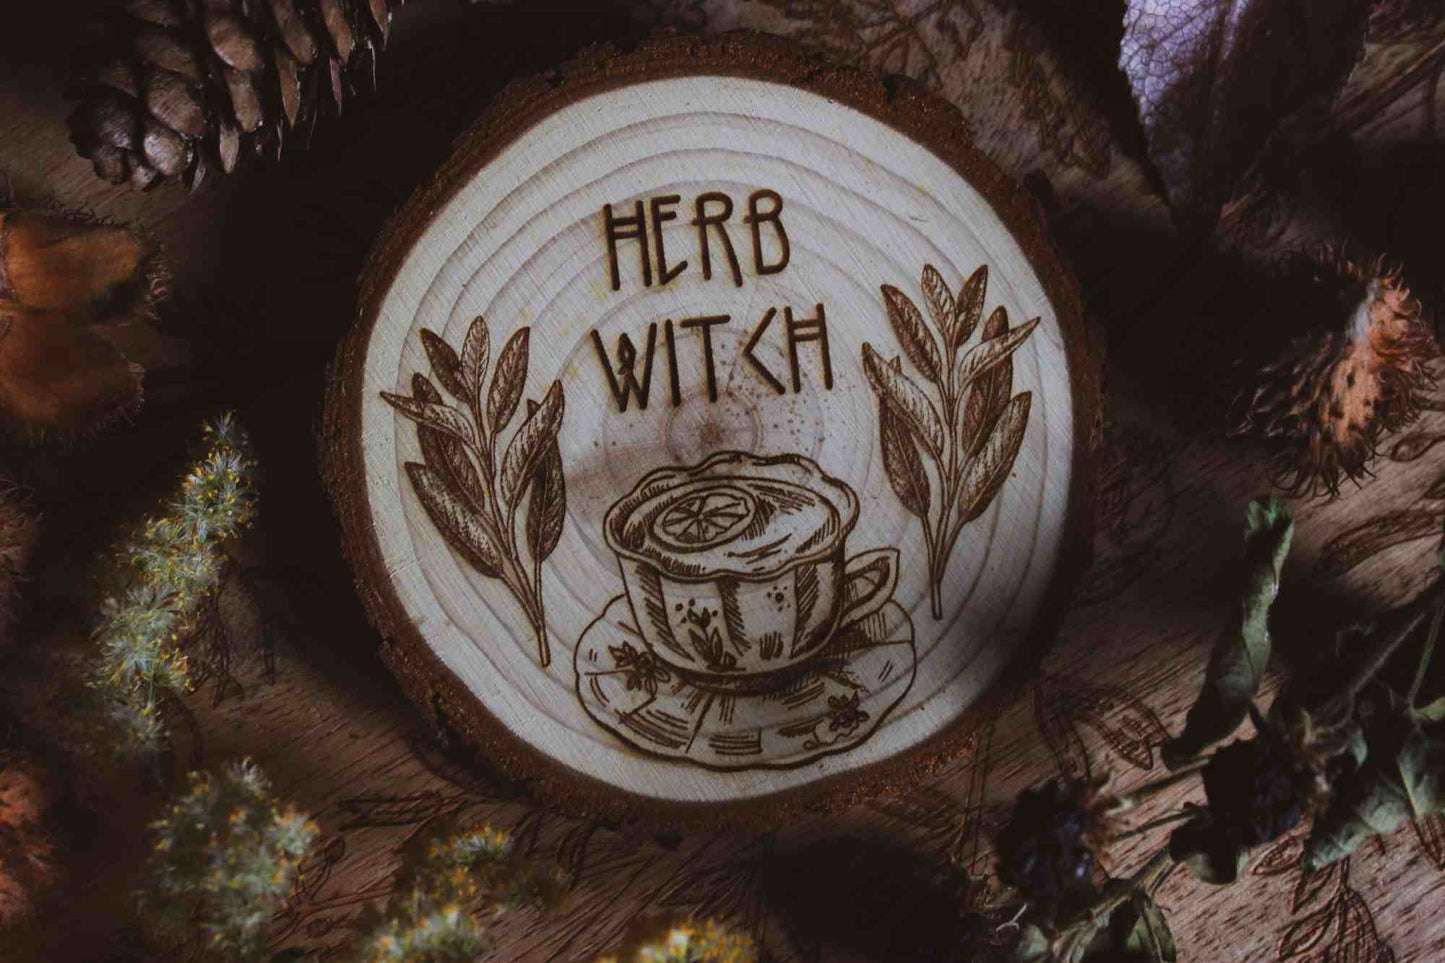 Wandbild aus Holz "Herb Witch" - Dieses Bild zeigt eine kunstvoll gravierte Holzscheibe mit der Inschrift “HERB WITCH”, umgeben von einer natürlichen und mystischen Atmosphäre. Die Gravur stellt eine Tasse Tee dar, die von zwei Zweigen mit Blättern flankiert wird, 